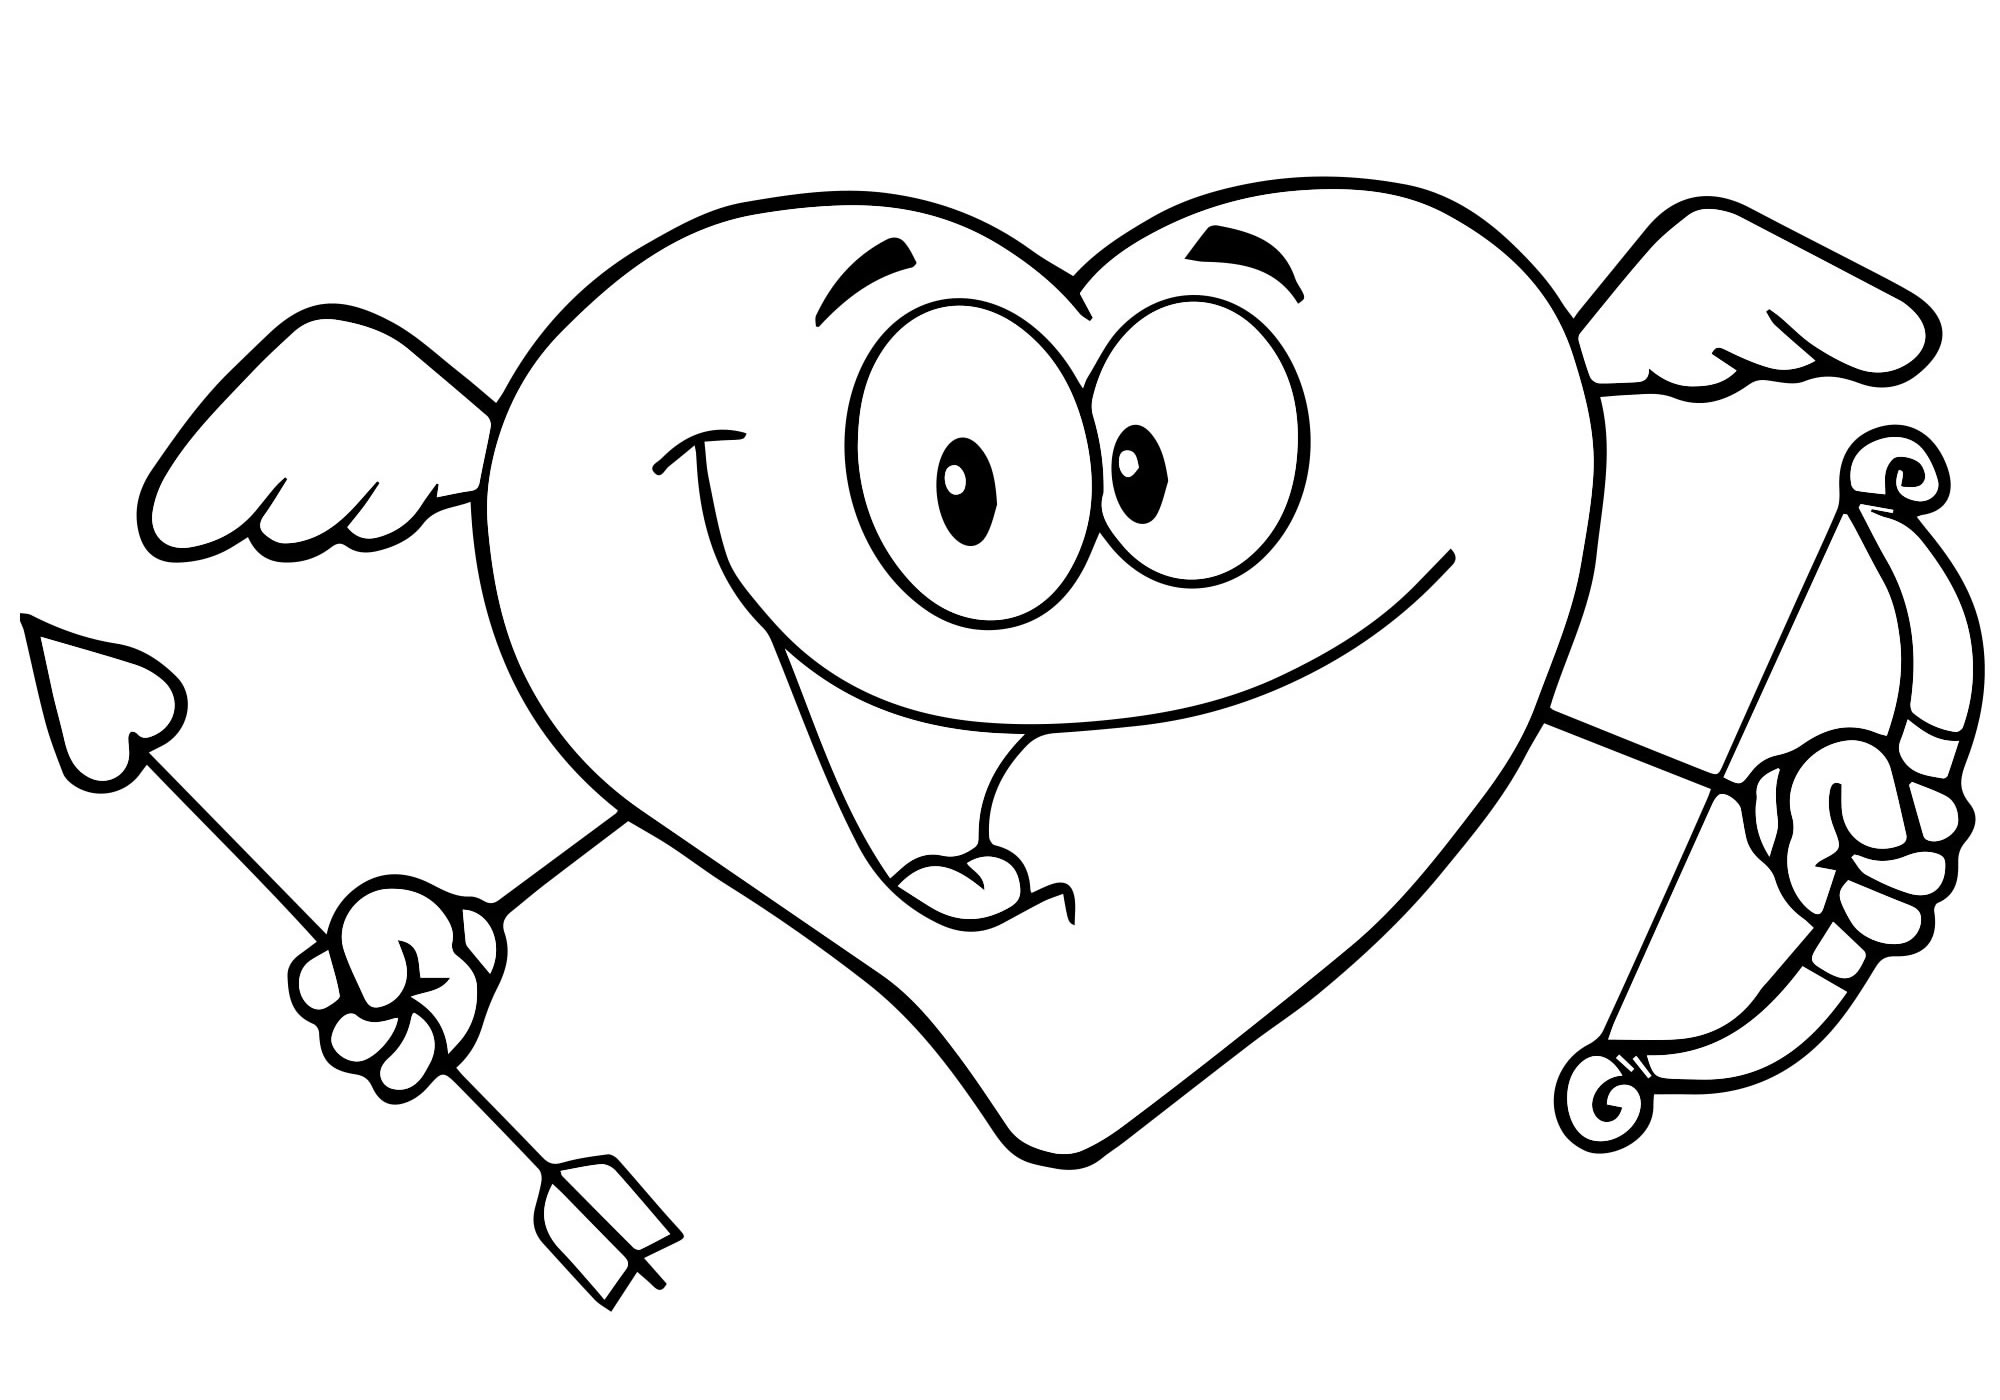 Валентинка сердечко раскраска для детей